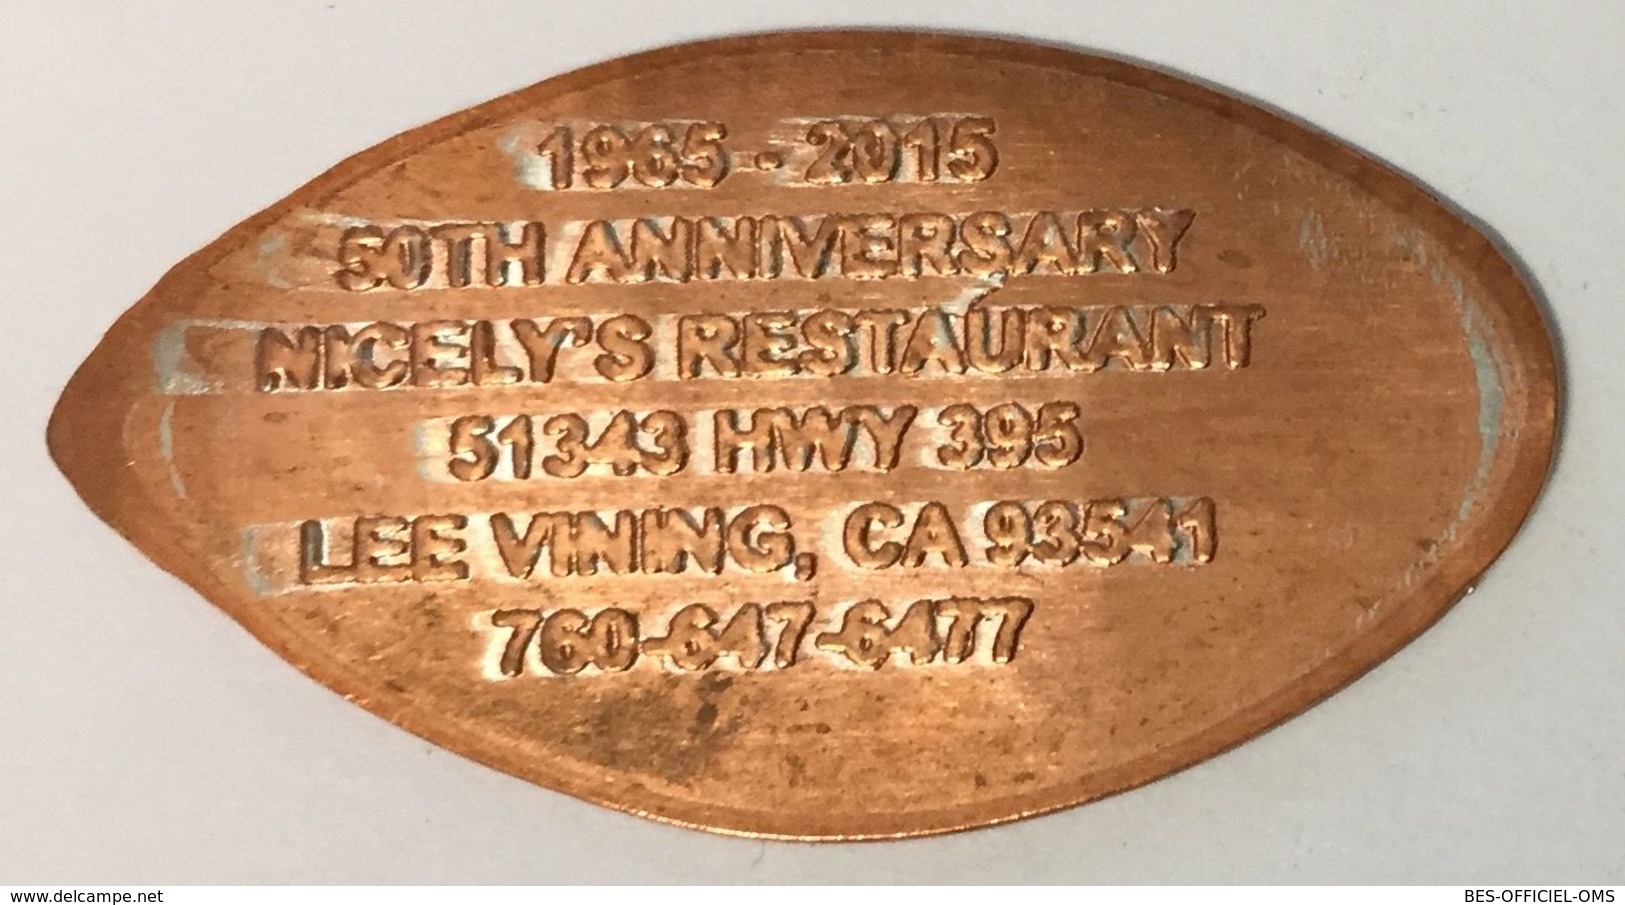 ÉTATS-UNIS USA MONO LAKE LEE VINING CA NICELY'S PENNY 1965-2015 ELONGATED COIN PIÈCE ÉCRASÉE MEDALS TOKENS - Souvenirmunten (elongated Coins)